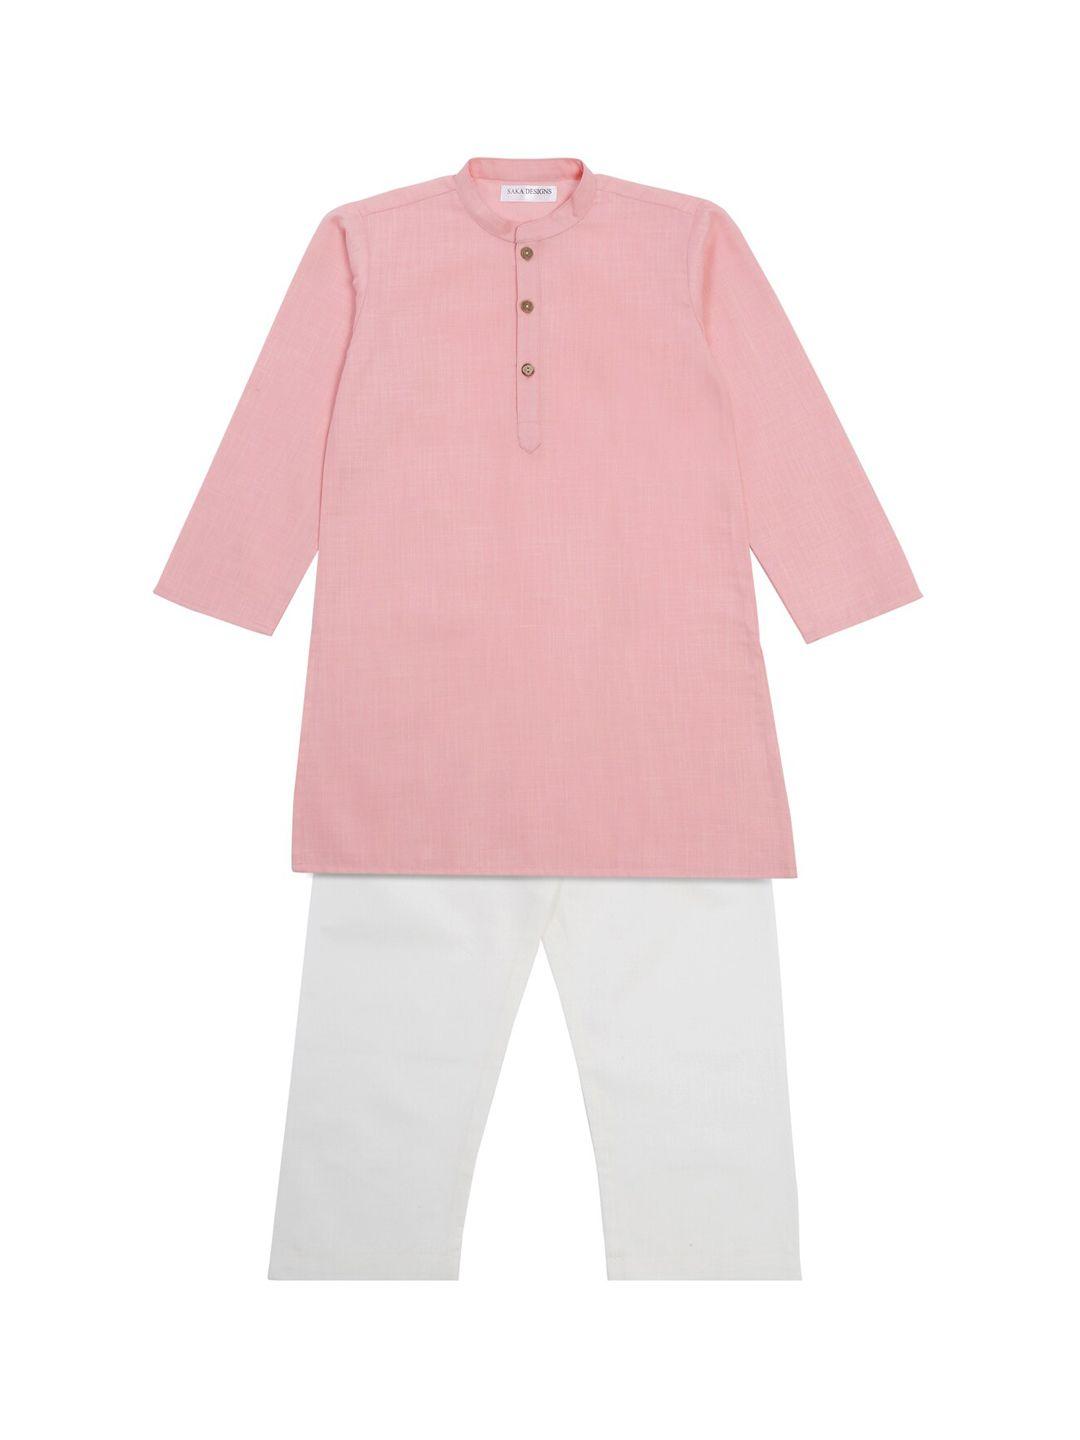 saka-designs-boys-mandarin-collar-straight-kurta-with-pyjamas